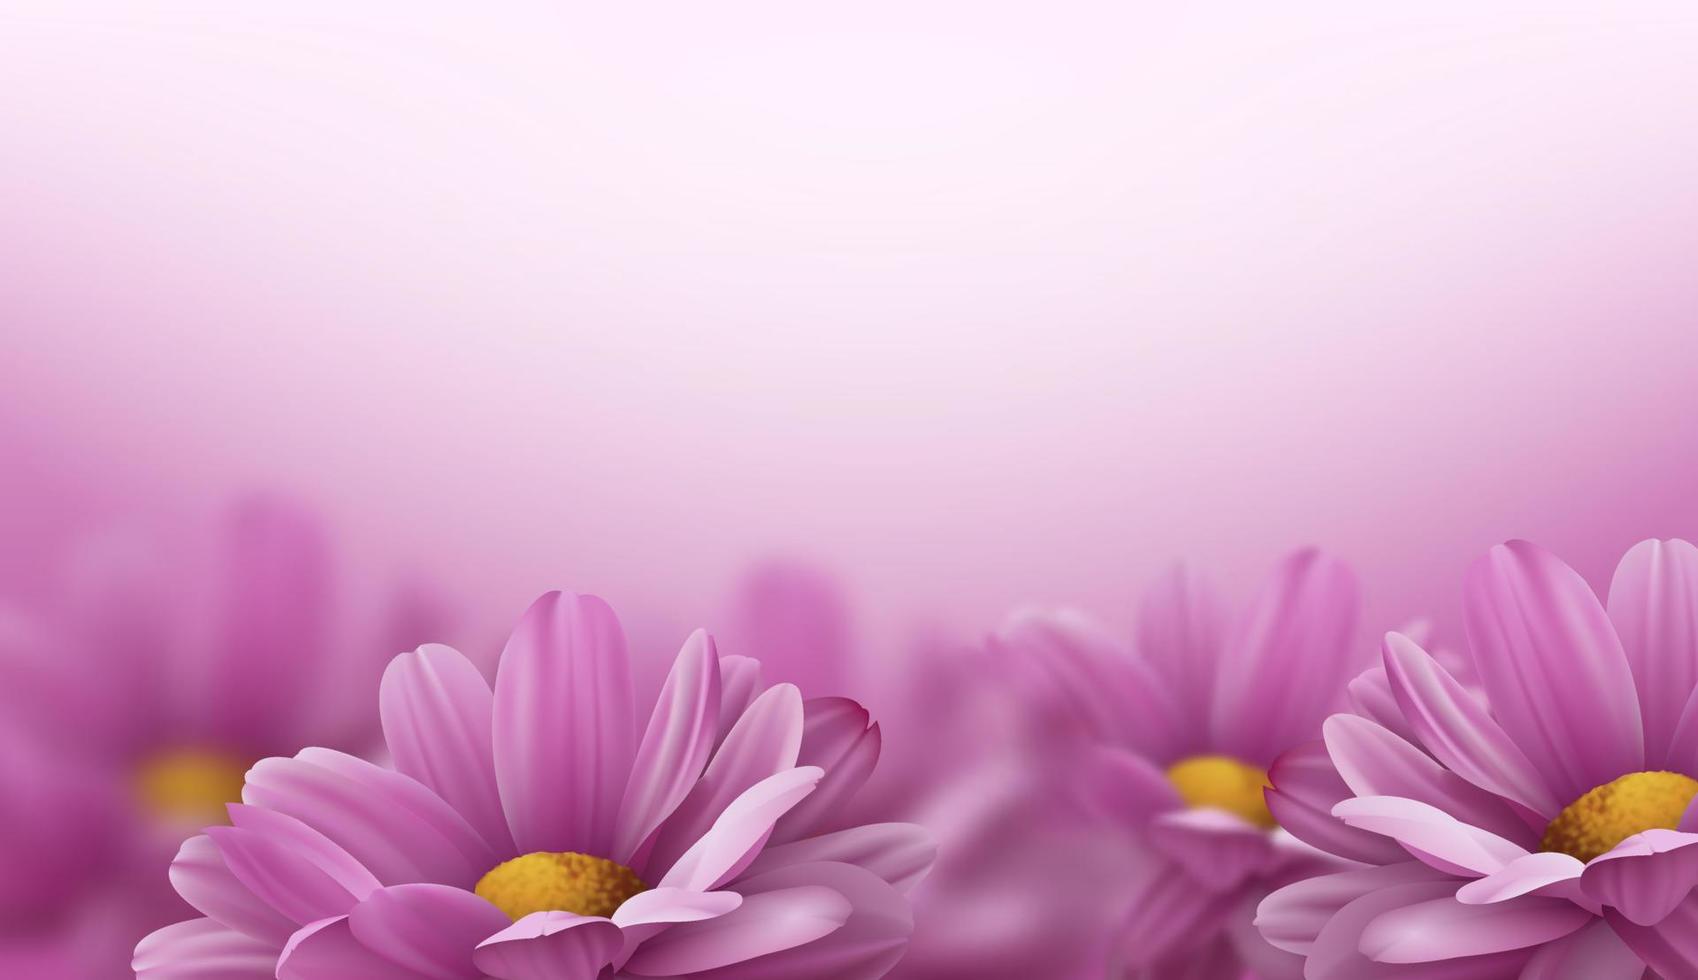 fiori di crisantemo rosa realistico 3d su sfondo bianco. illustrazione vettoriale